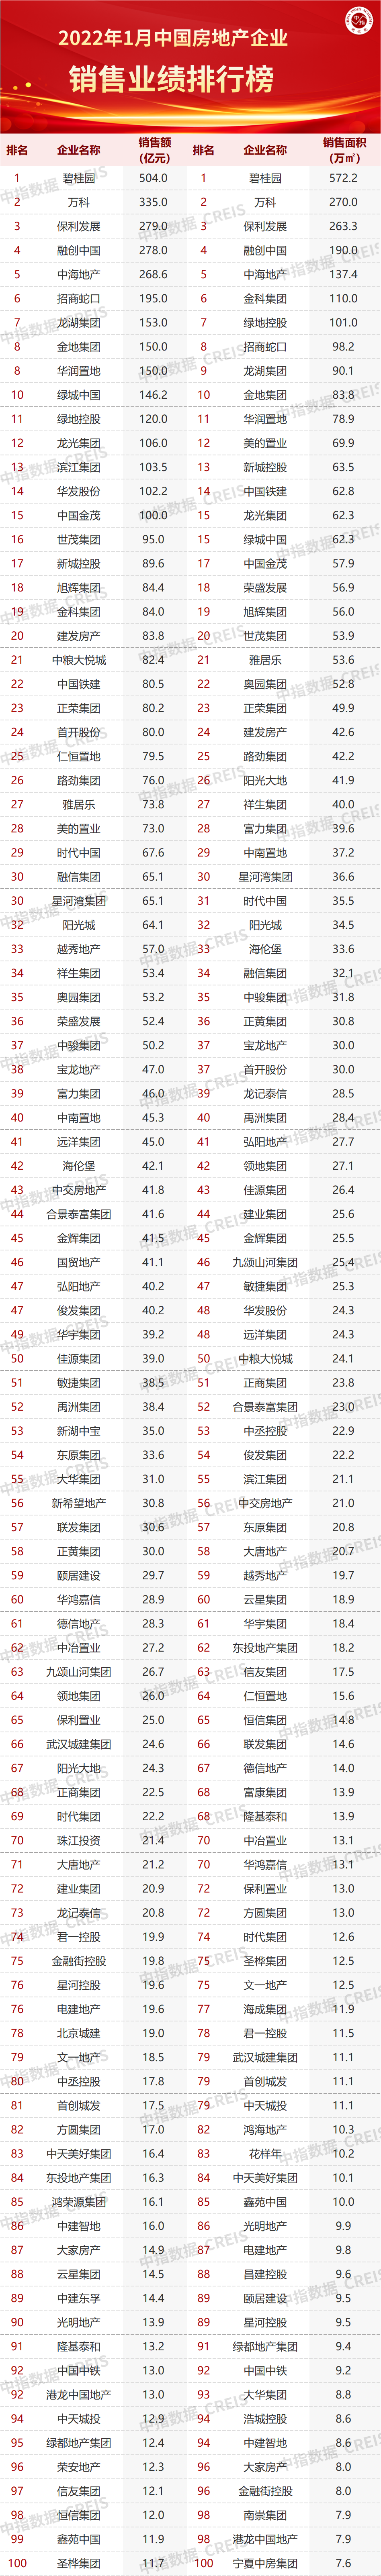 房产行业排行_2022年1-2月中国房地产企业销售TOP100排行榜(2)